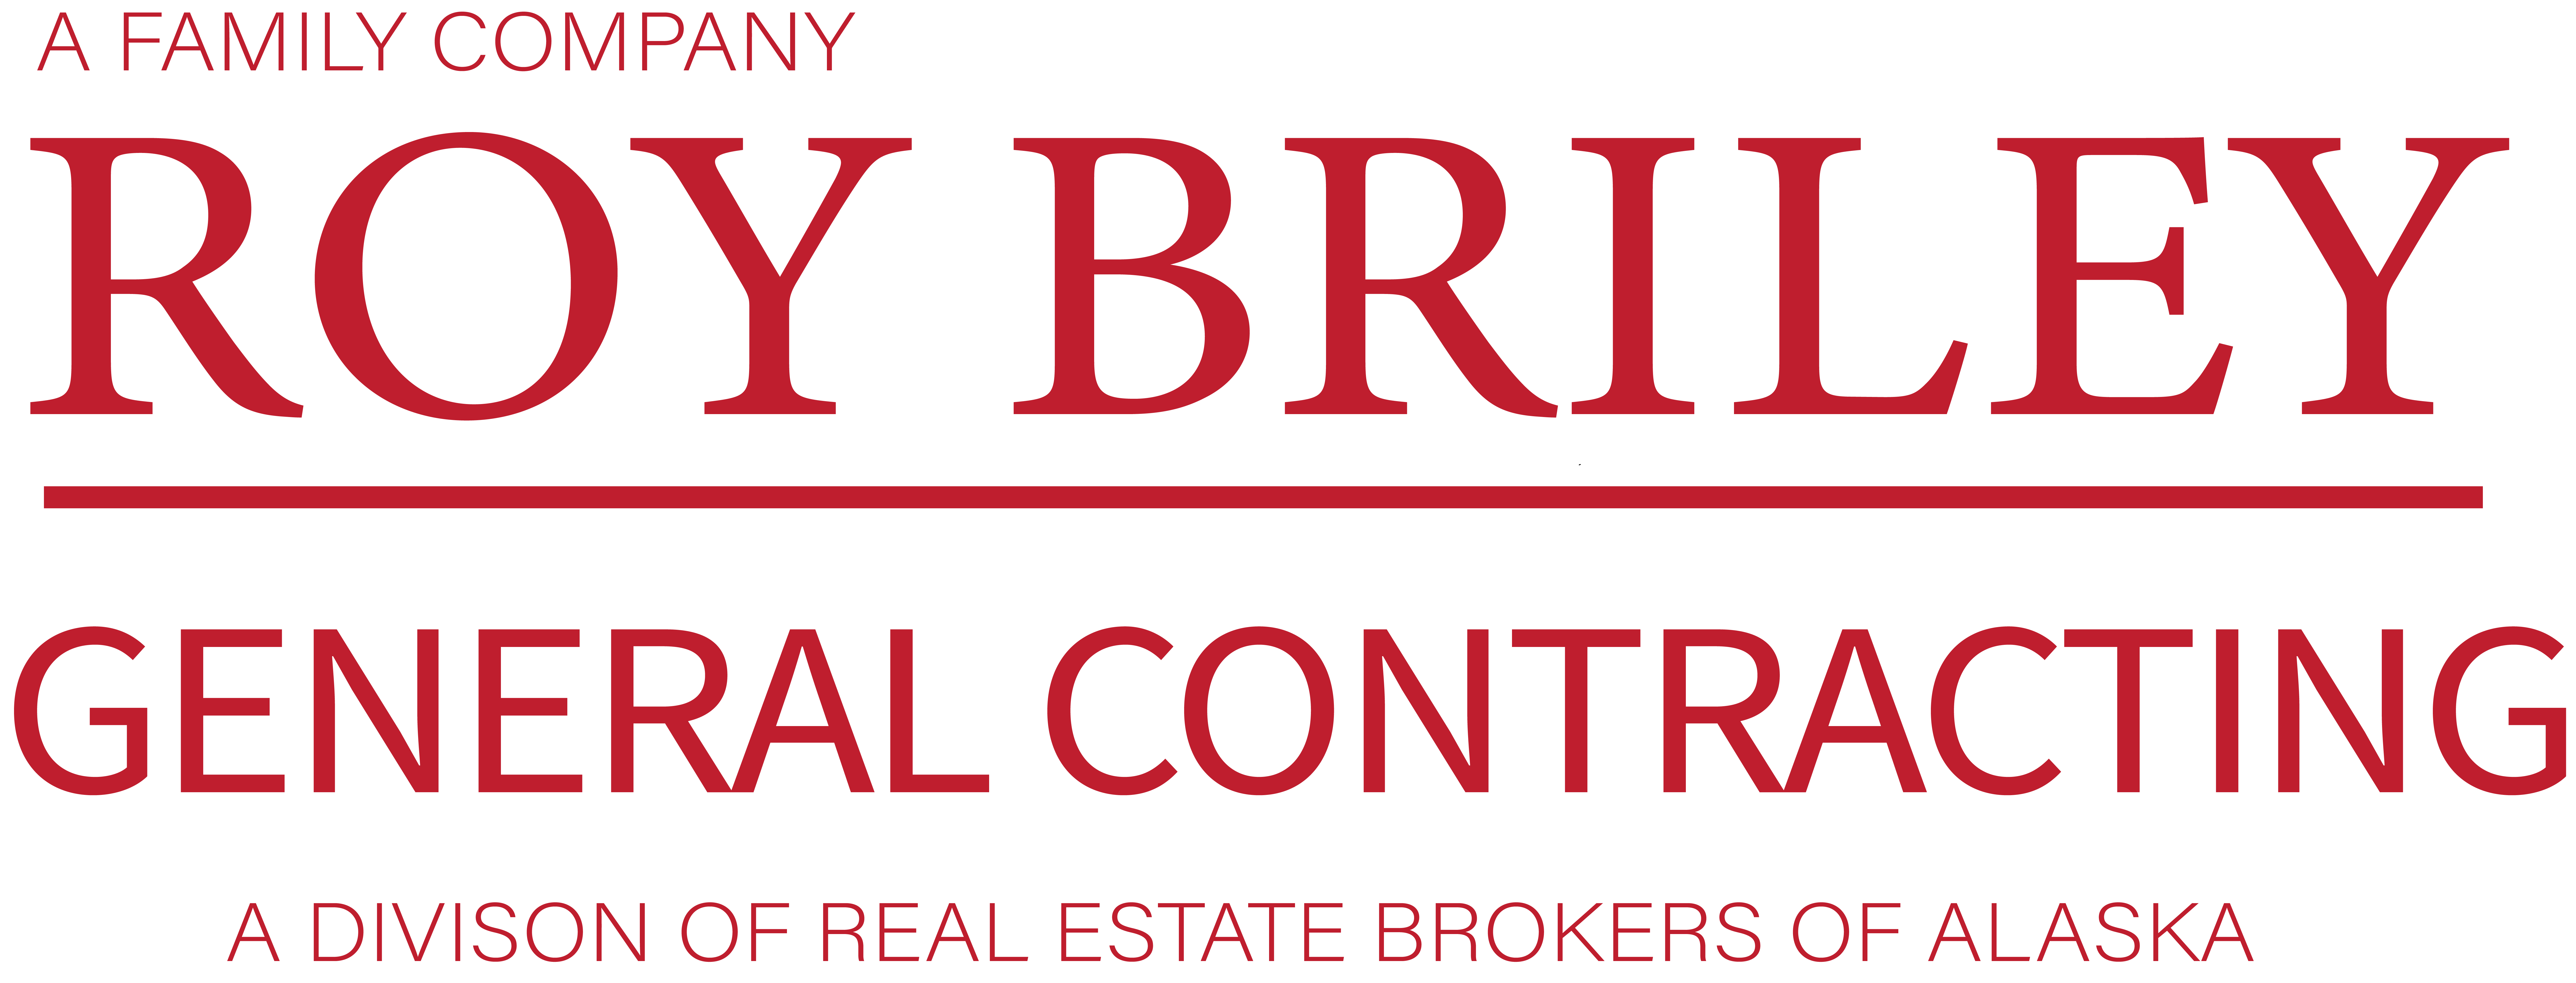 Roy Briley Property Services Logo